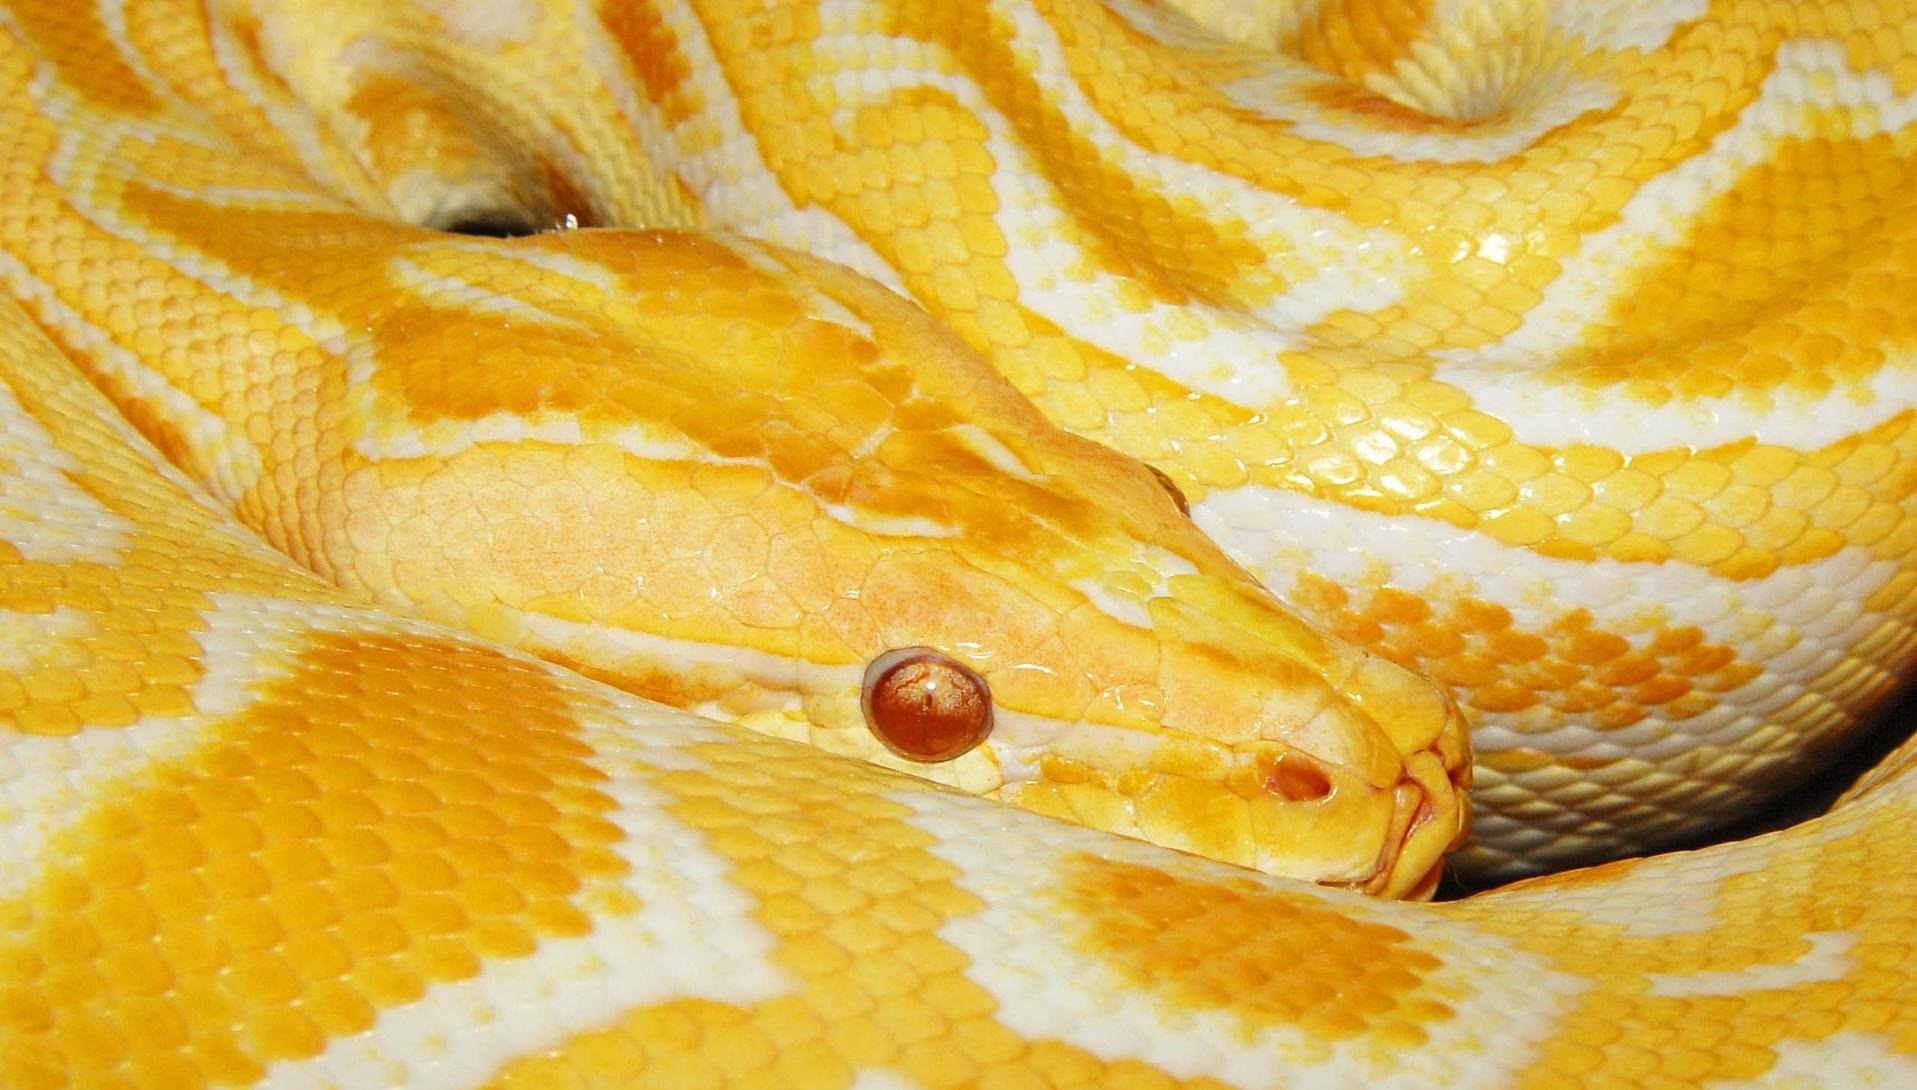 Красно желтая змея